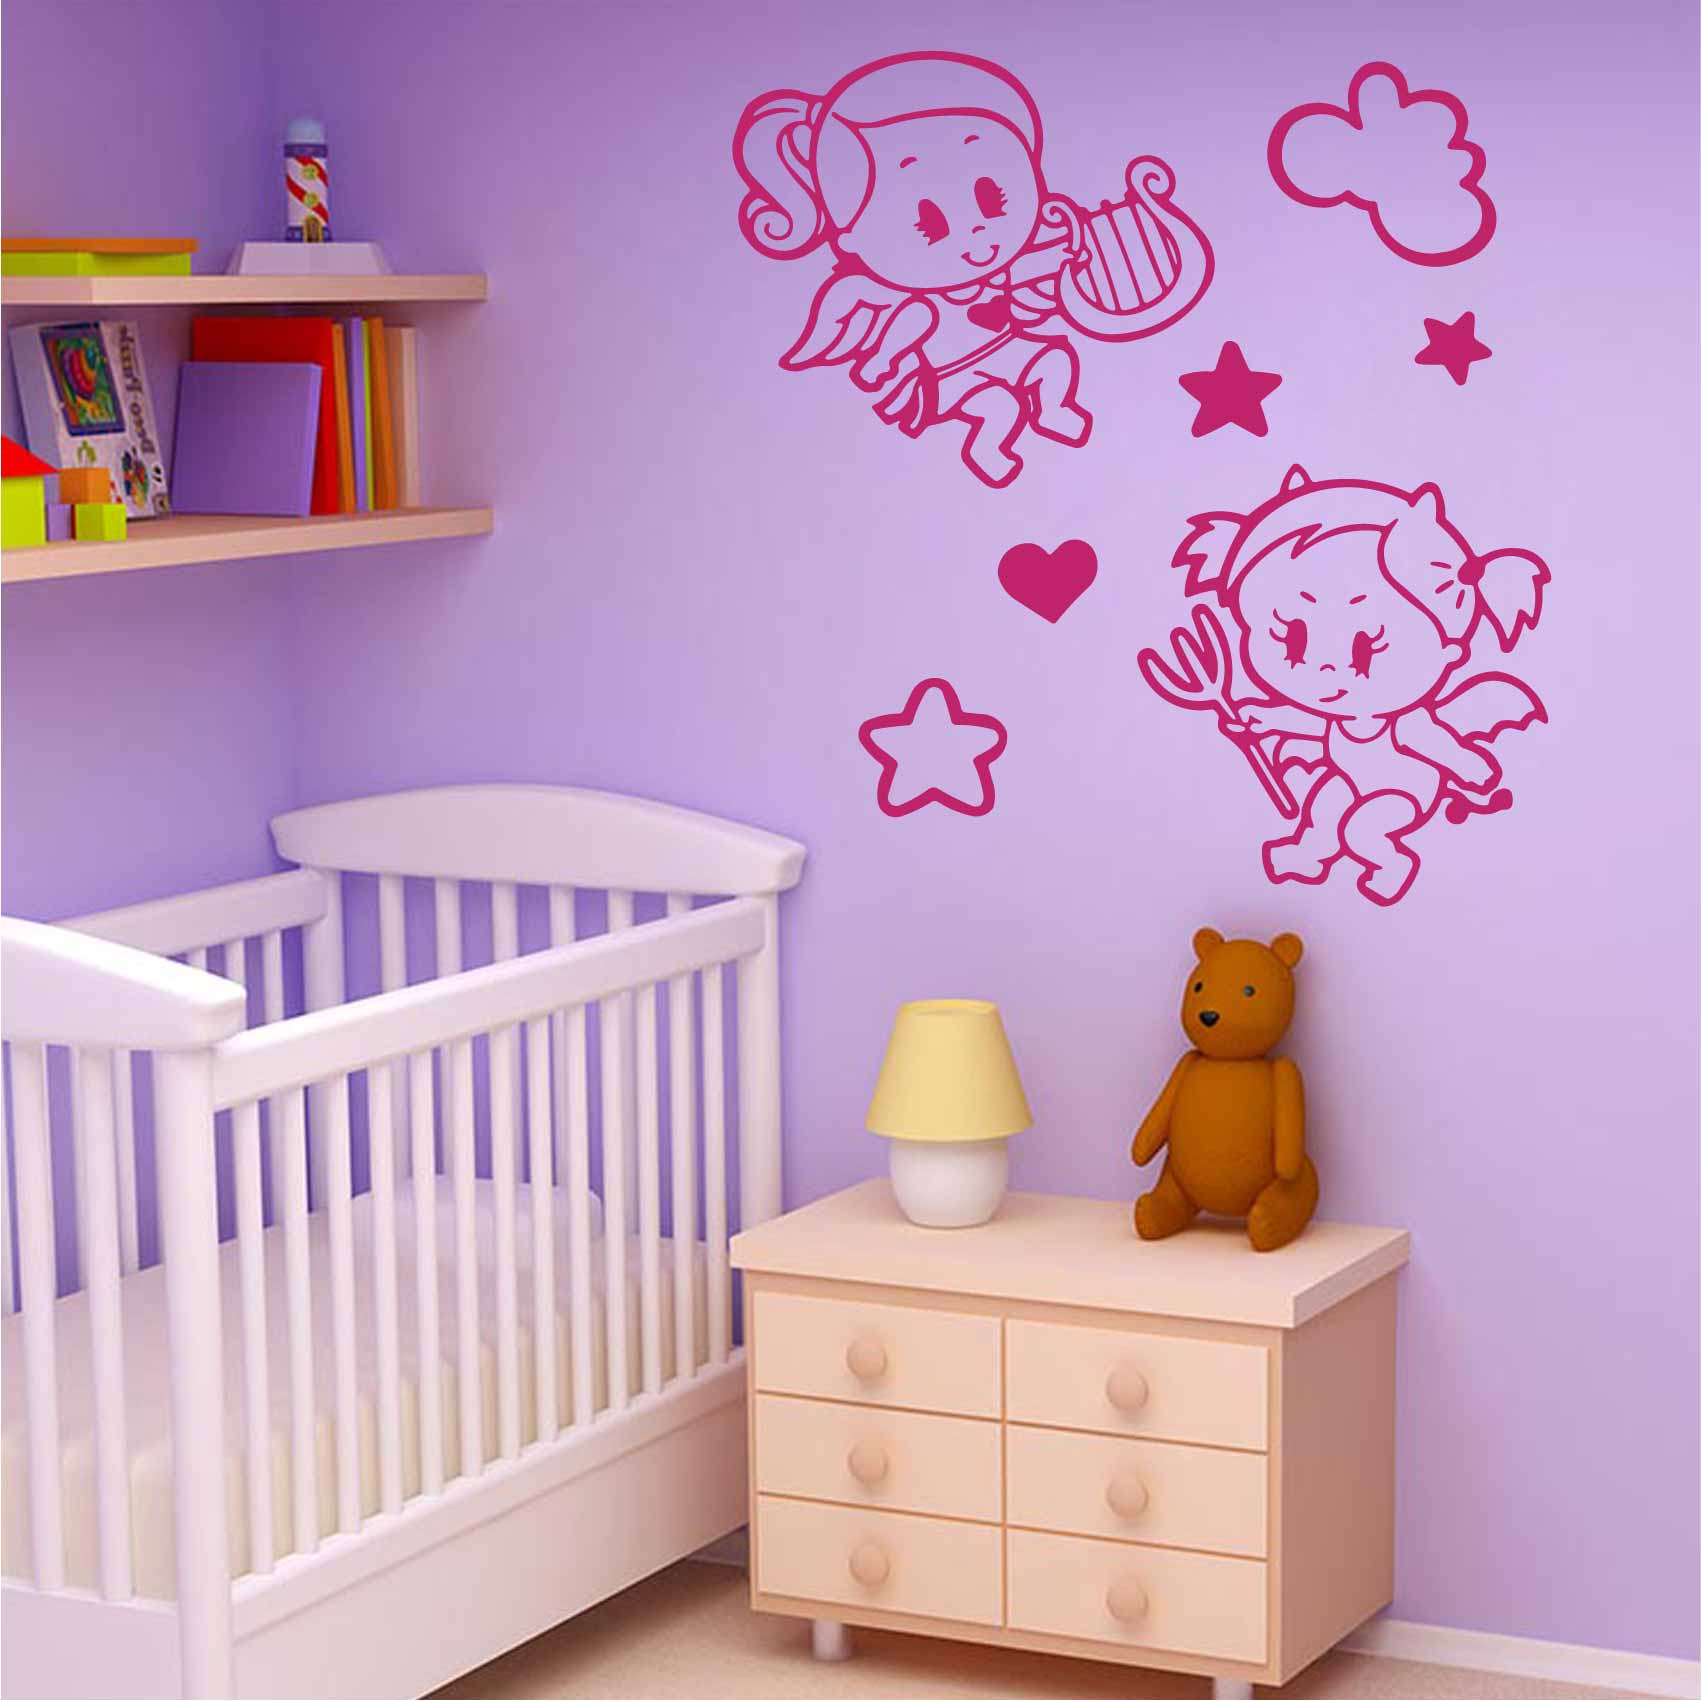 stickers-bébé-ange-et-diable-ref33bebe-stickers-muraux-bébé-autocollant-mural-bébé-sticker-chambre-enfant-garcon-fille-decoration-deco